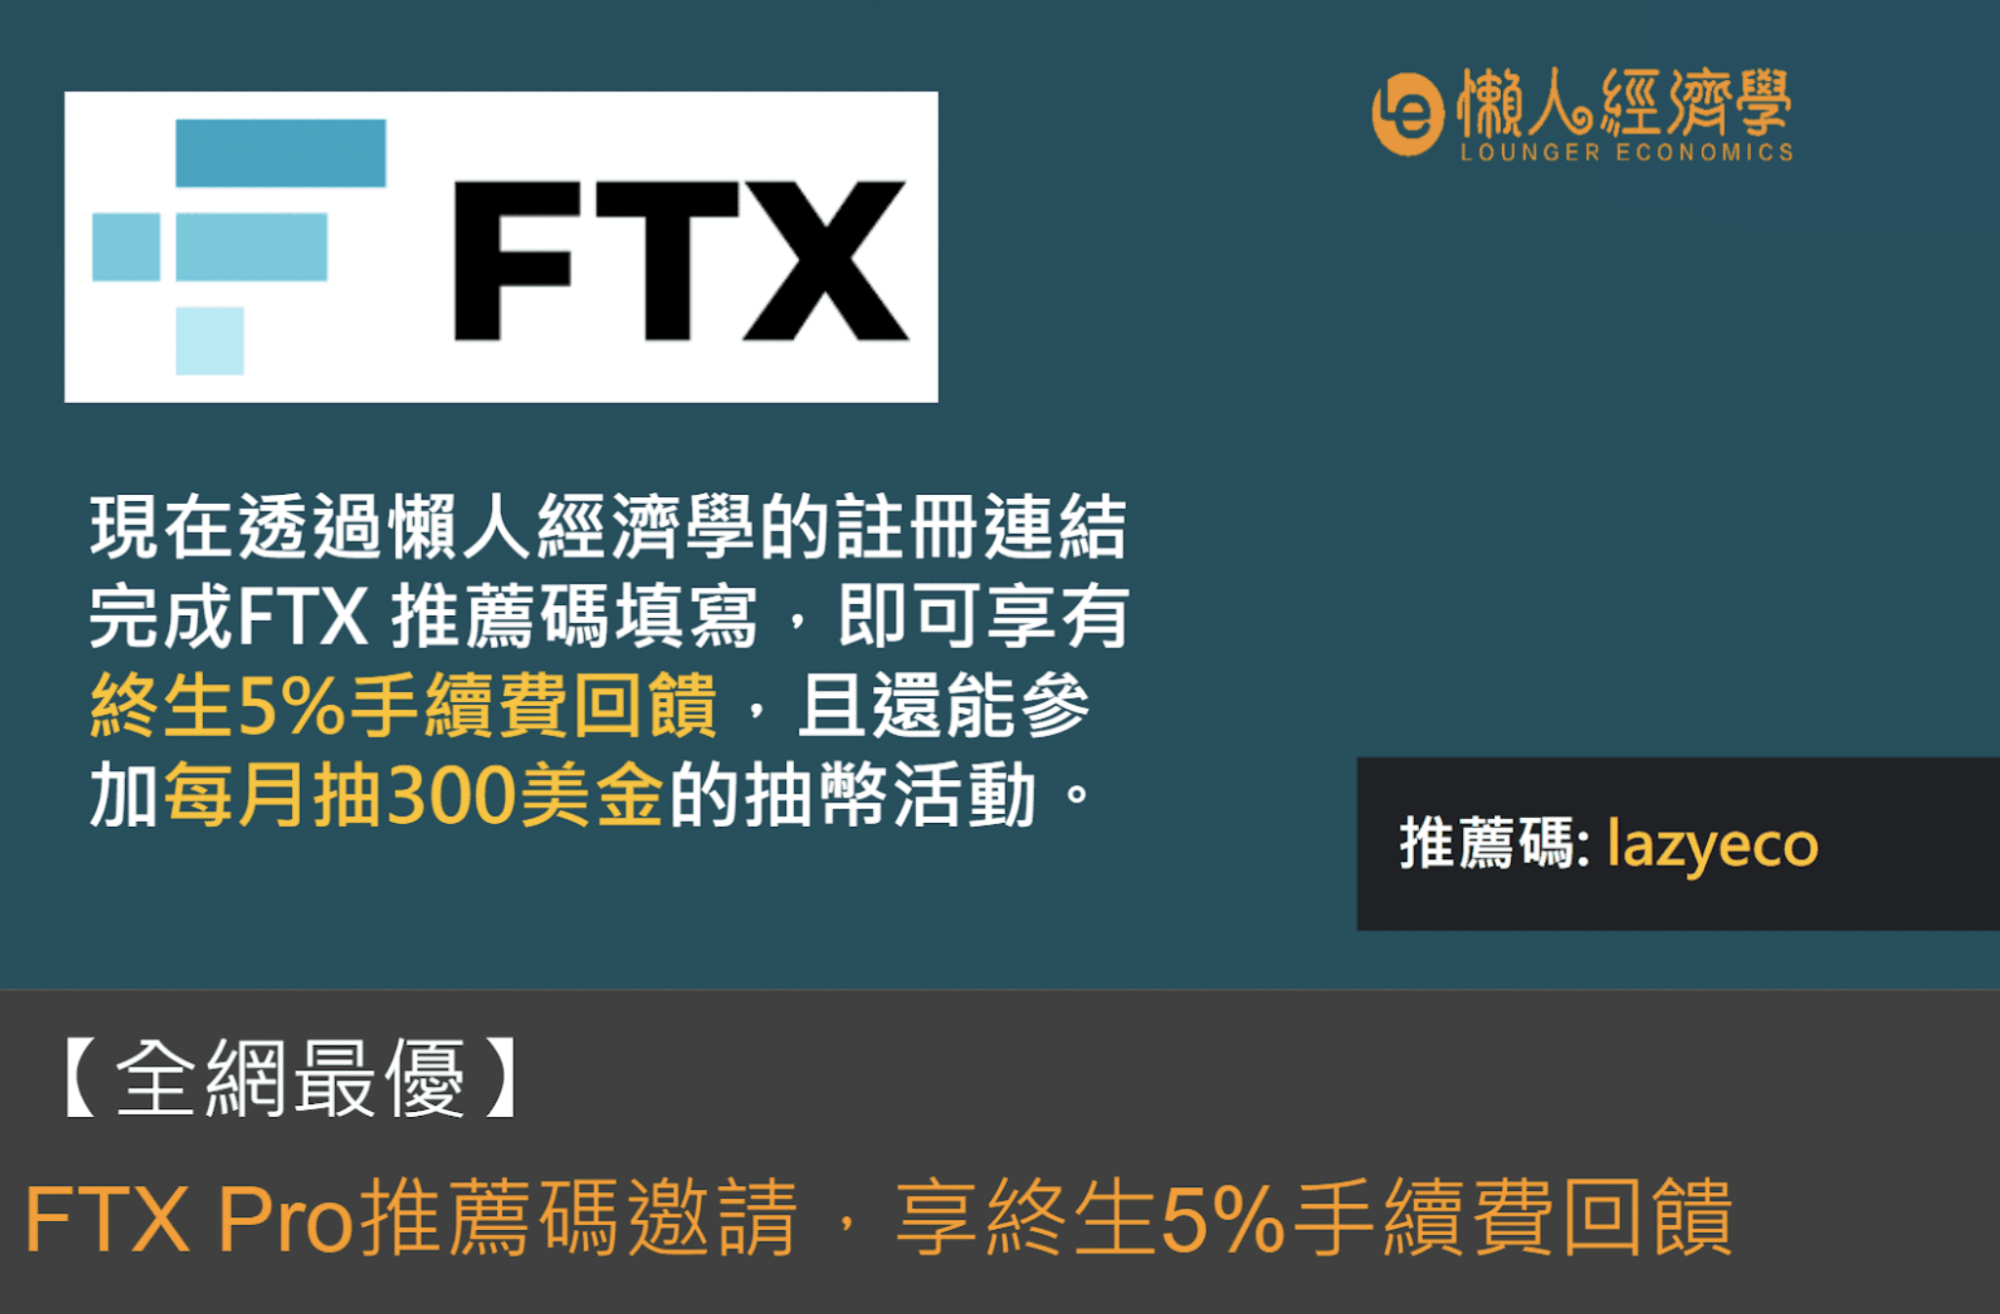 【全网最优】FTX Pro 推荐码 lazyeco，邀请享终生5%手续费回馈 + 300U每月抽奖